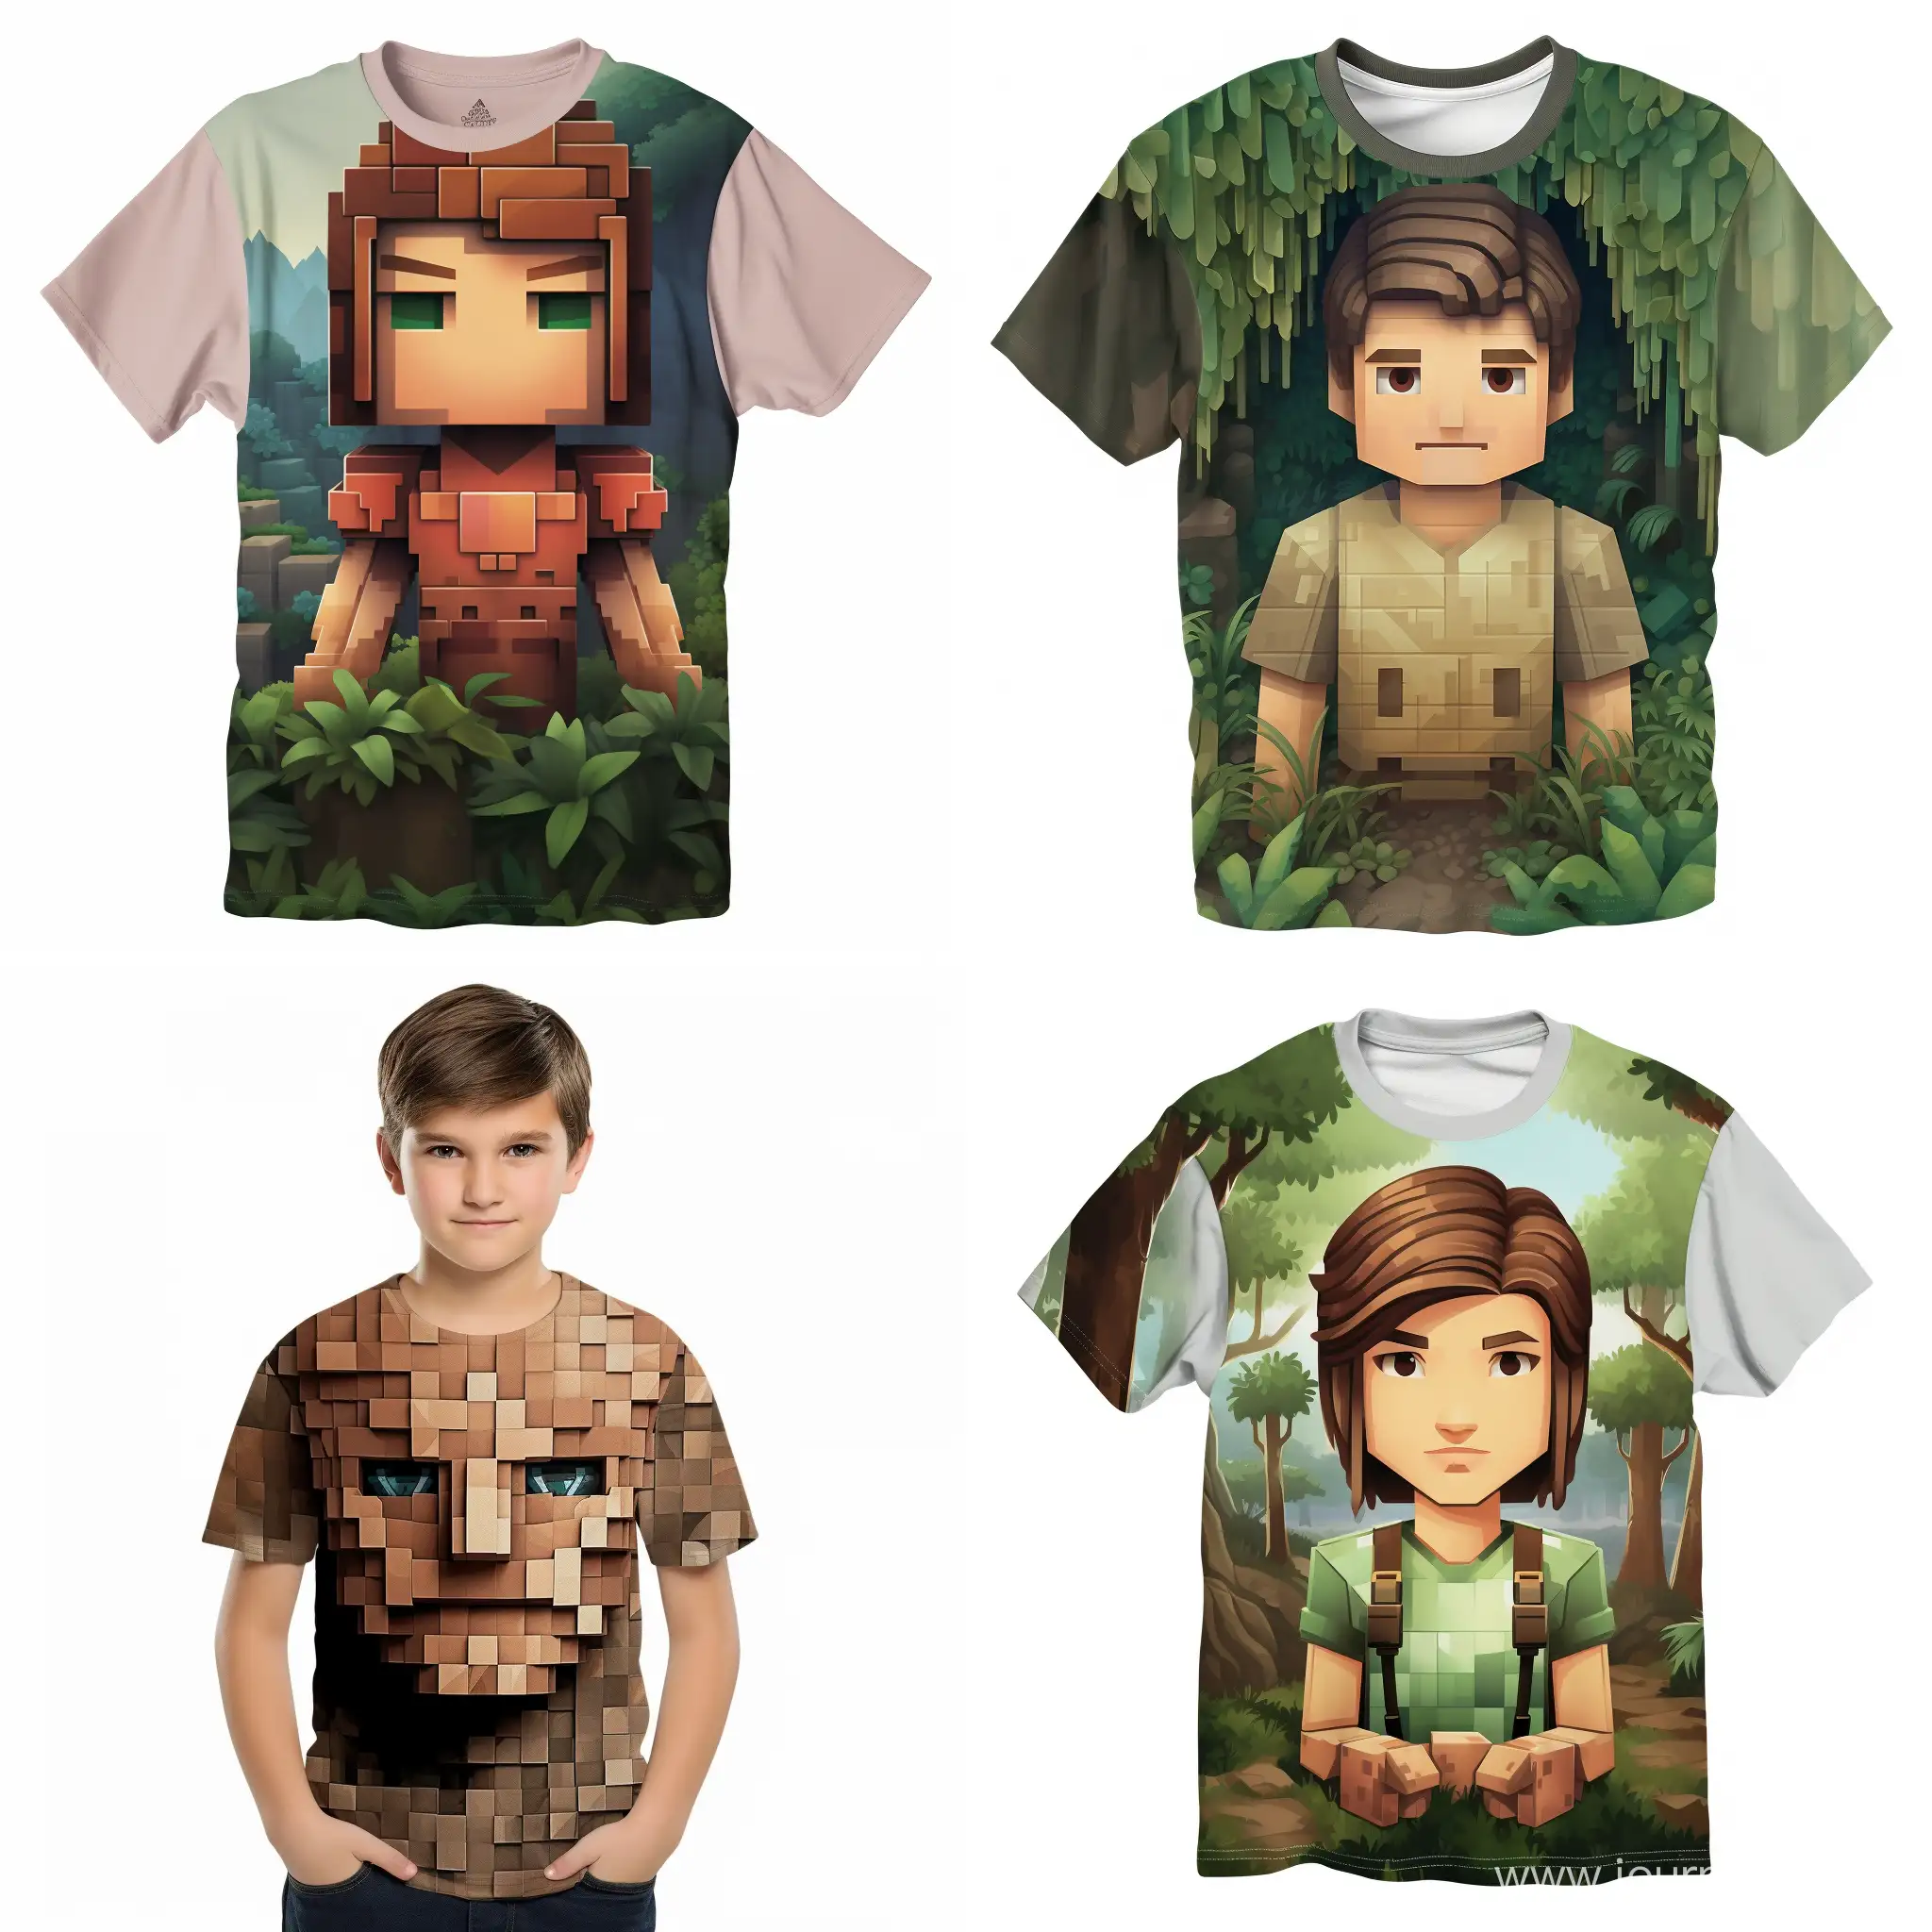 Застенчивый реалистичный человек 13-15 лет с добрым лицом с рисунком Minecraft на футболке